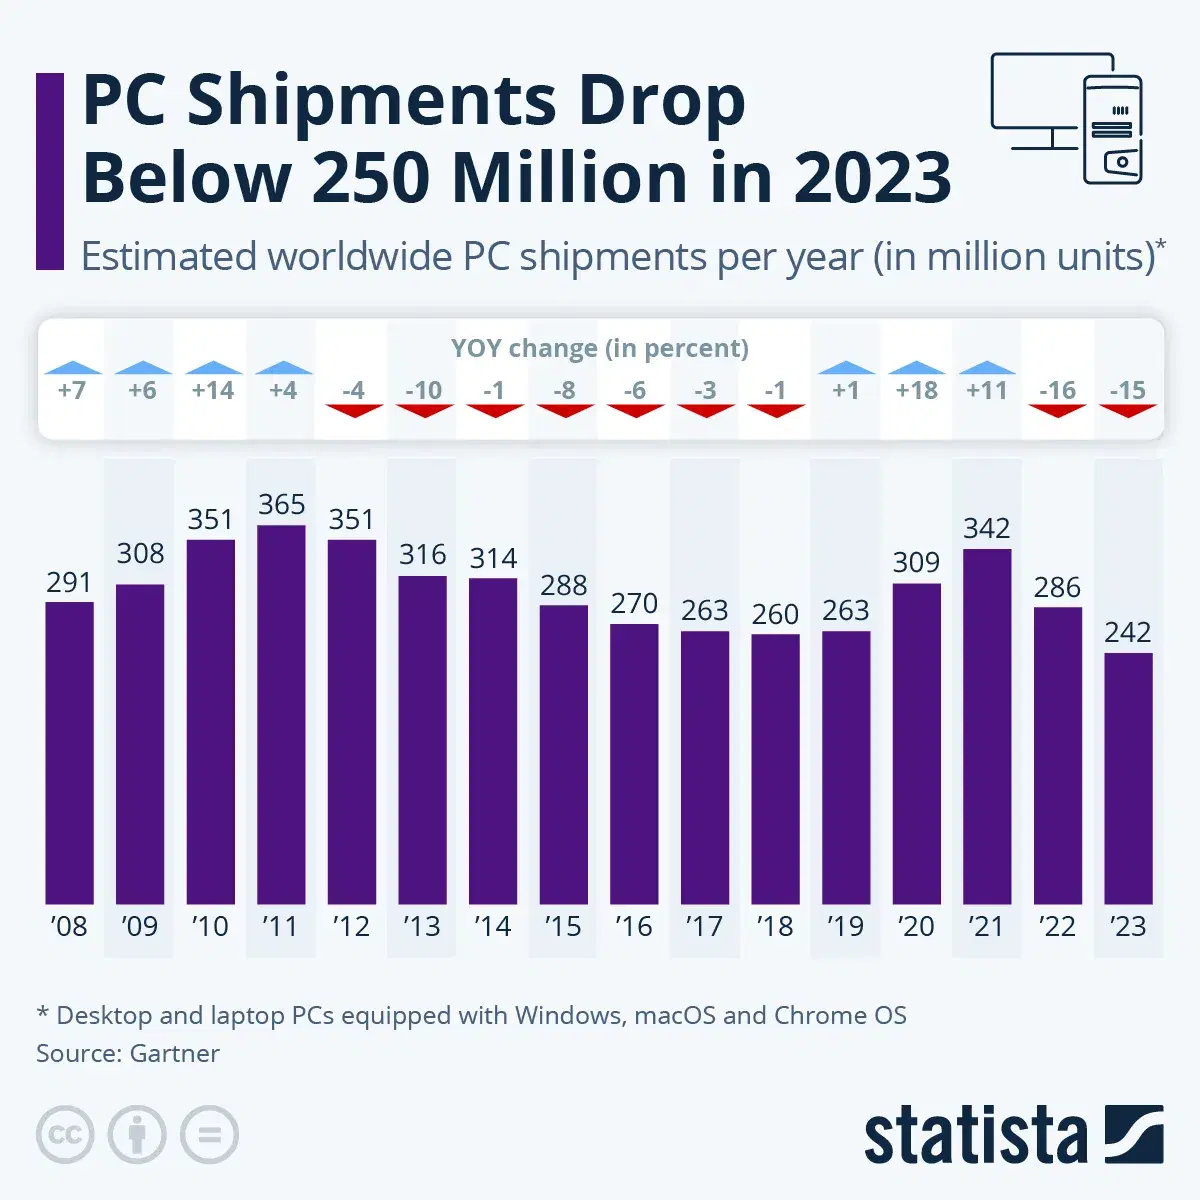 PC Shipments Drop Below 250 Million in 2023